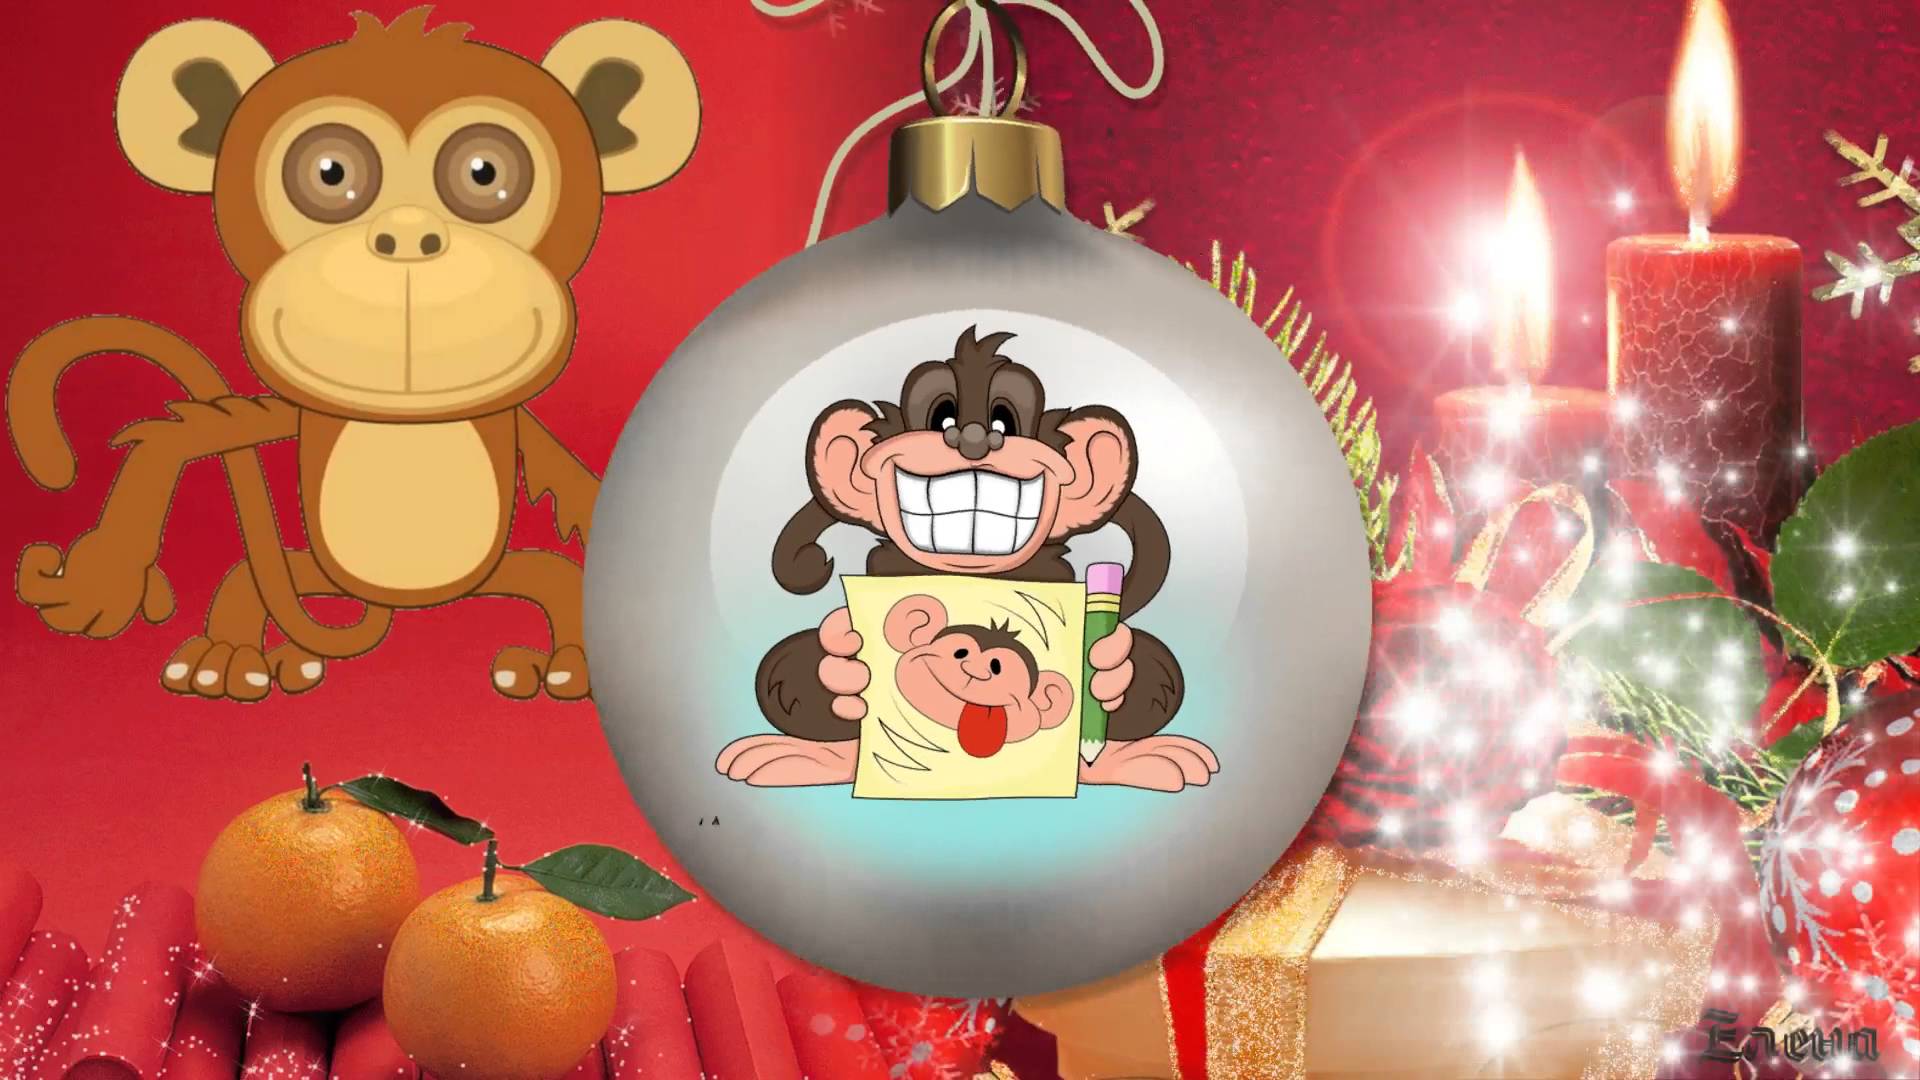 Как встречать год красной огненной обезьяны - архив новогоднего раздела